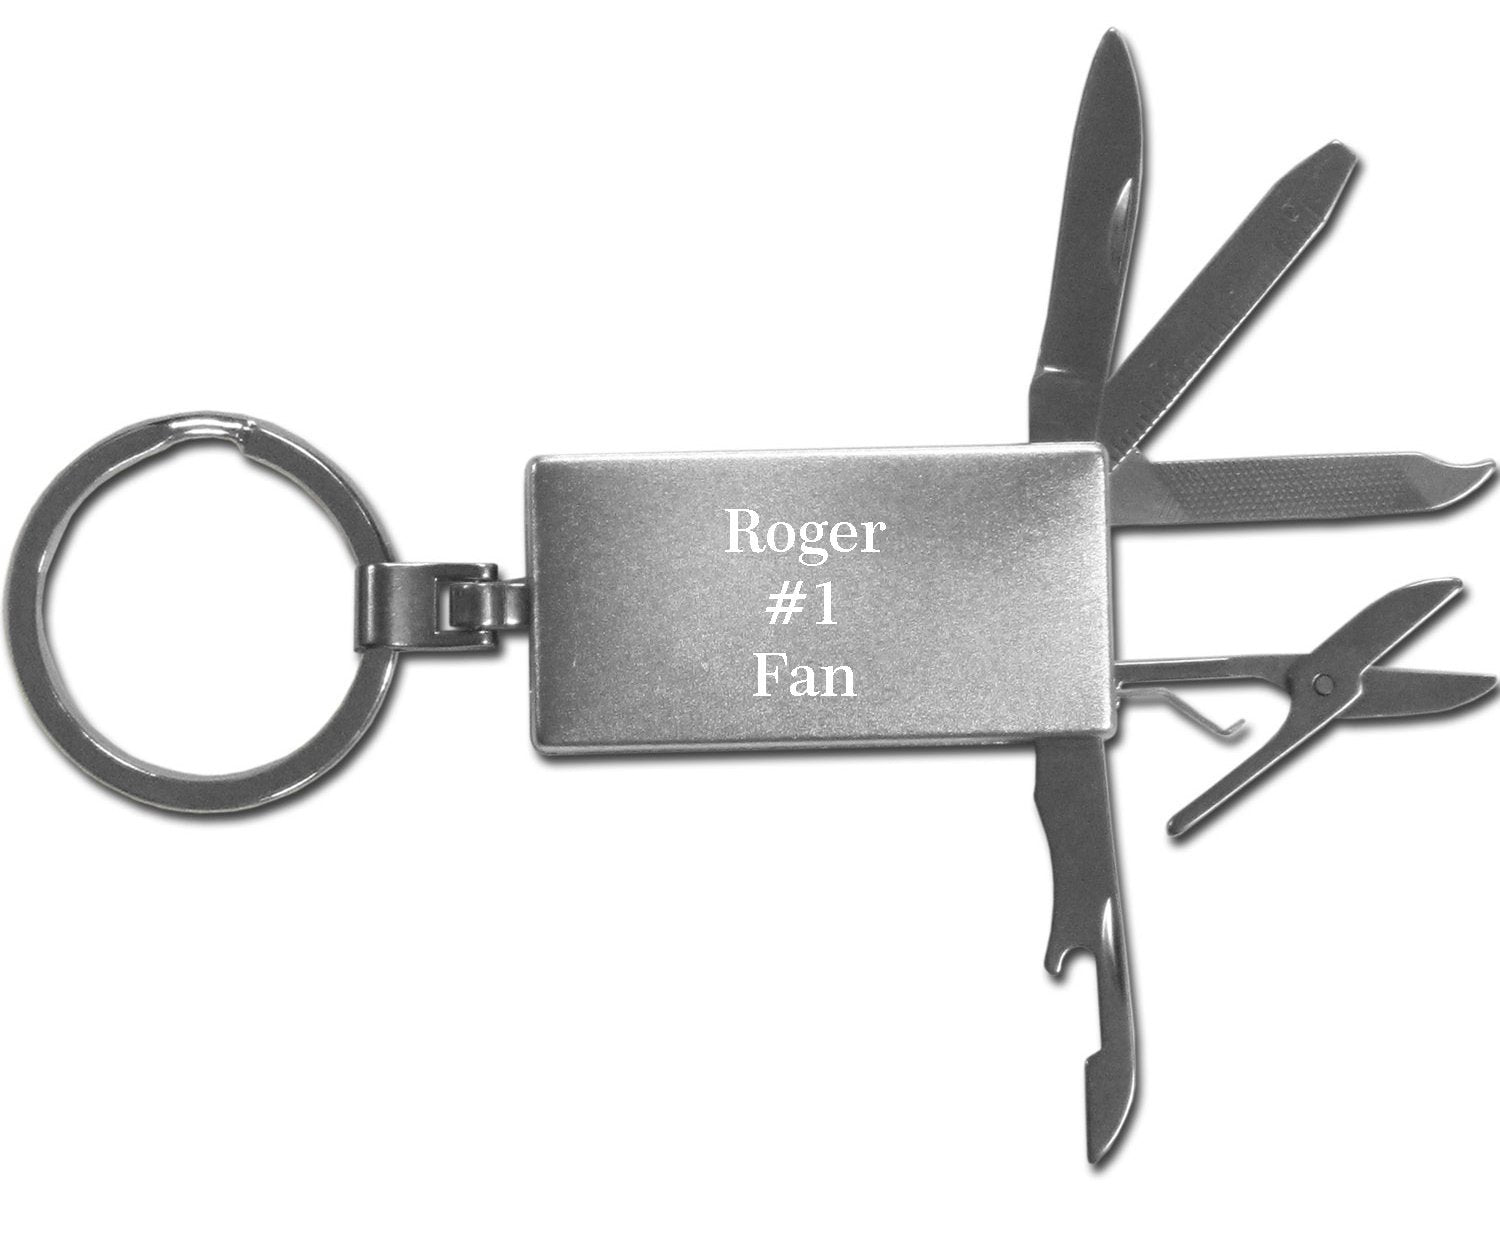 Las Vegas Raiders Multi-tool Key Chain